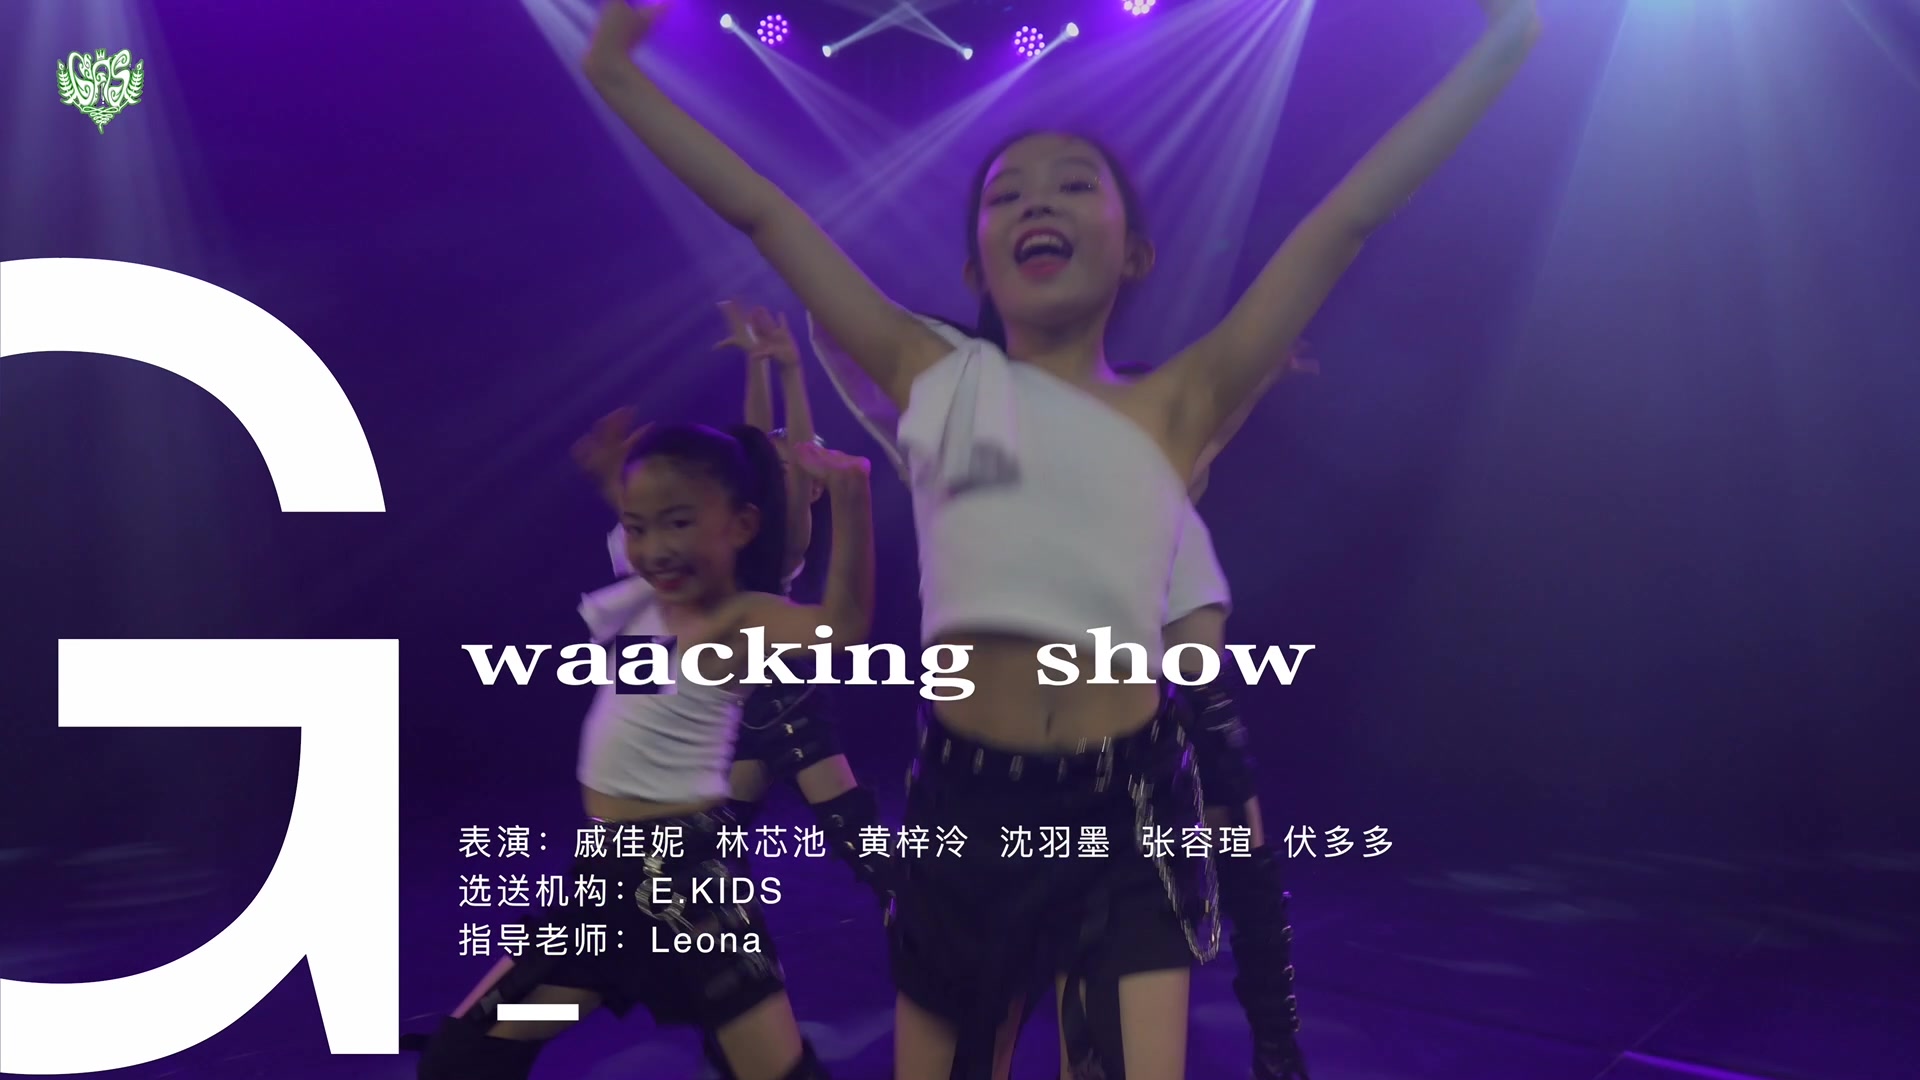 2019溉世来袭演唱会舞蹈节目《waacking show》